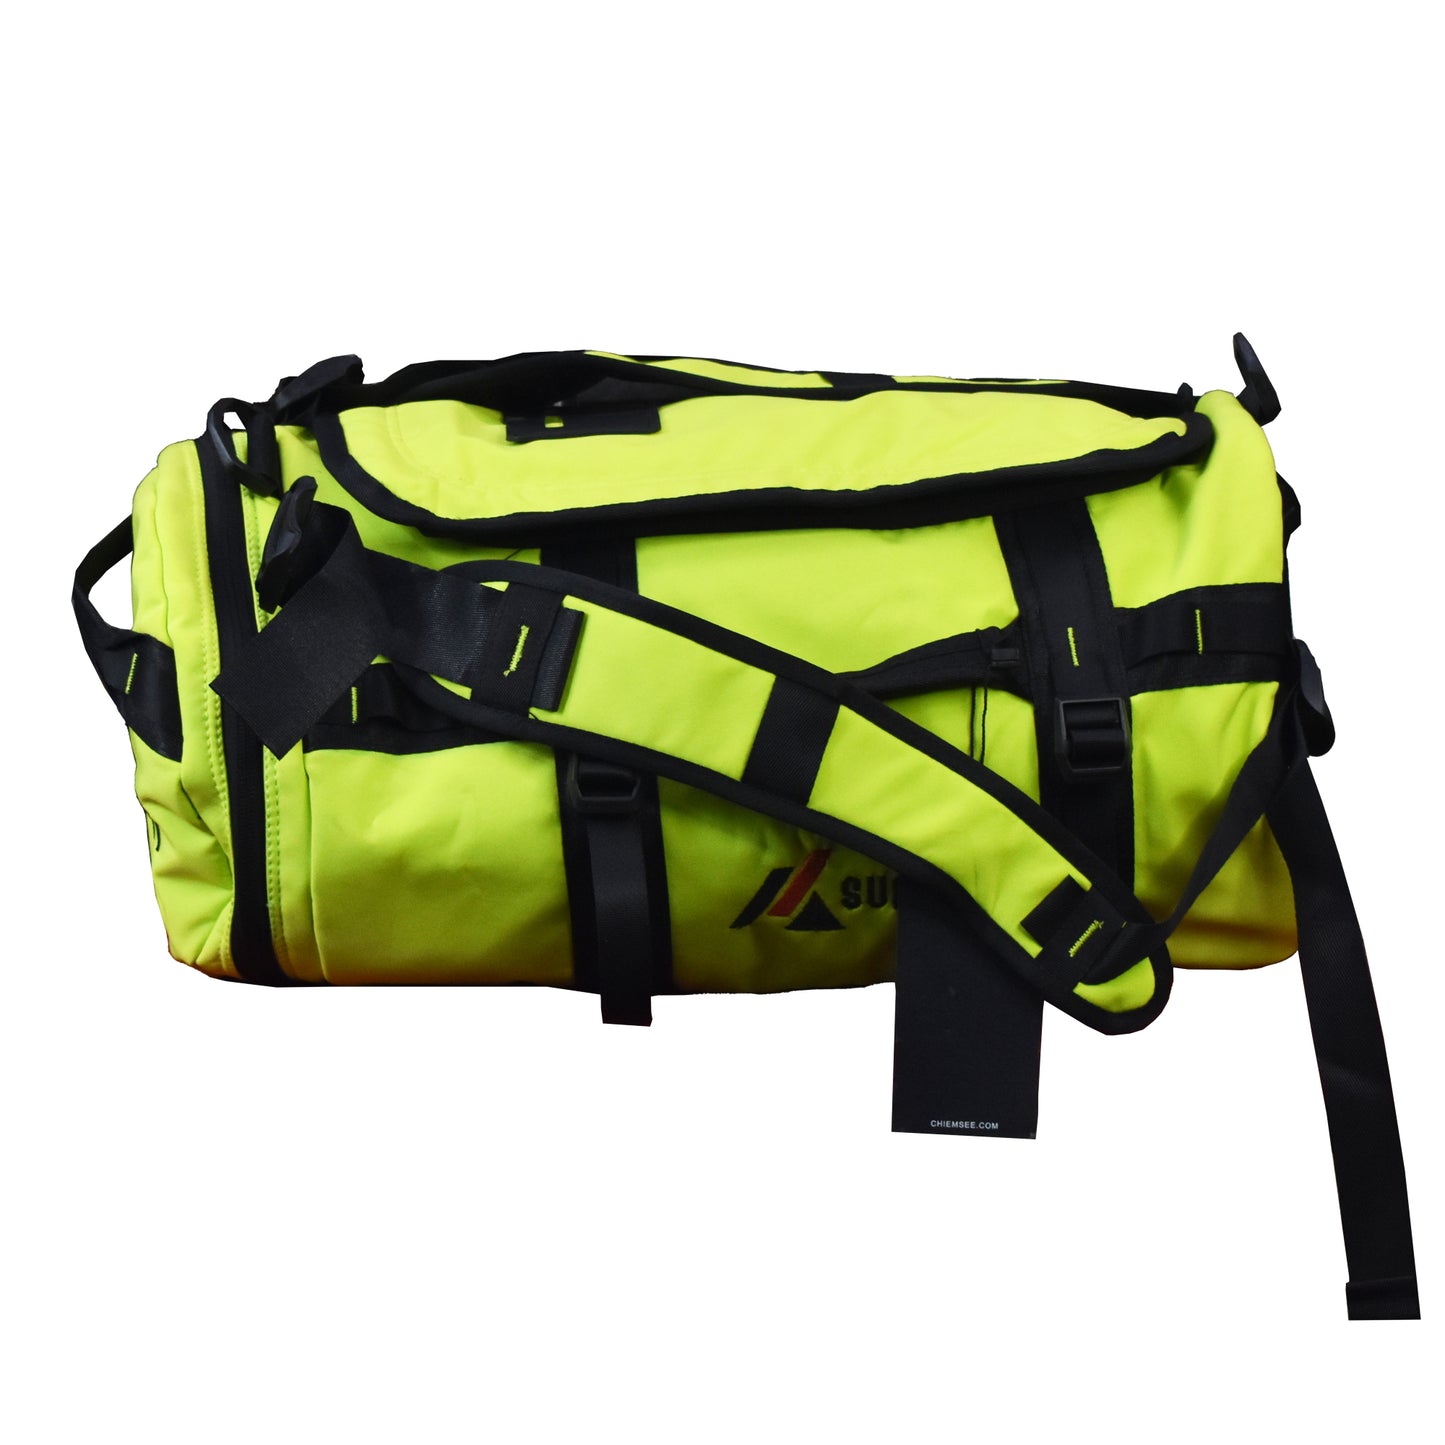 4in1 Bag Summit | Travel Bag | Gym Bag | Waterproof